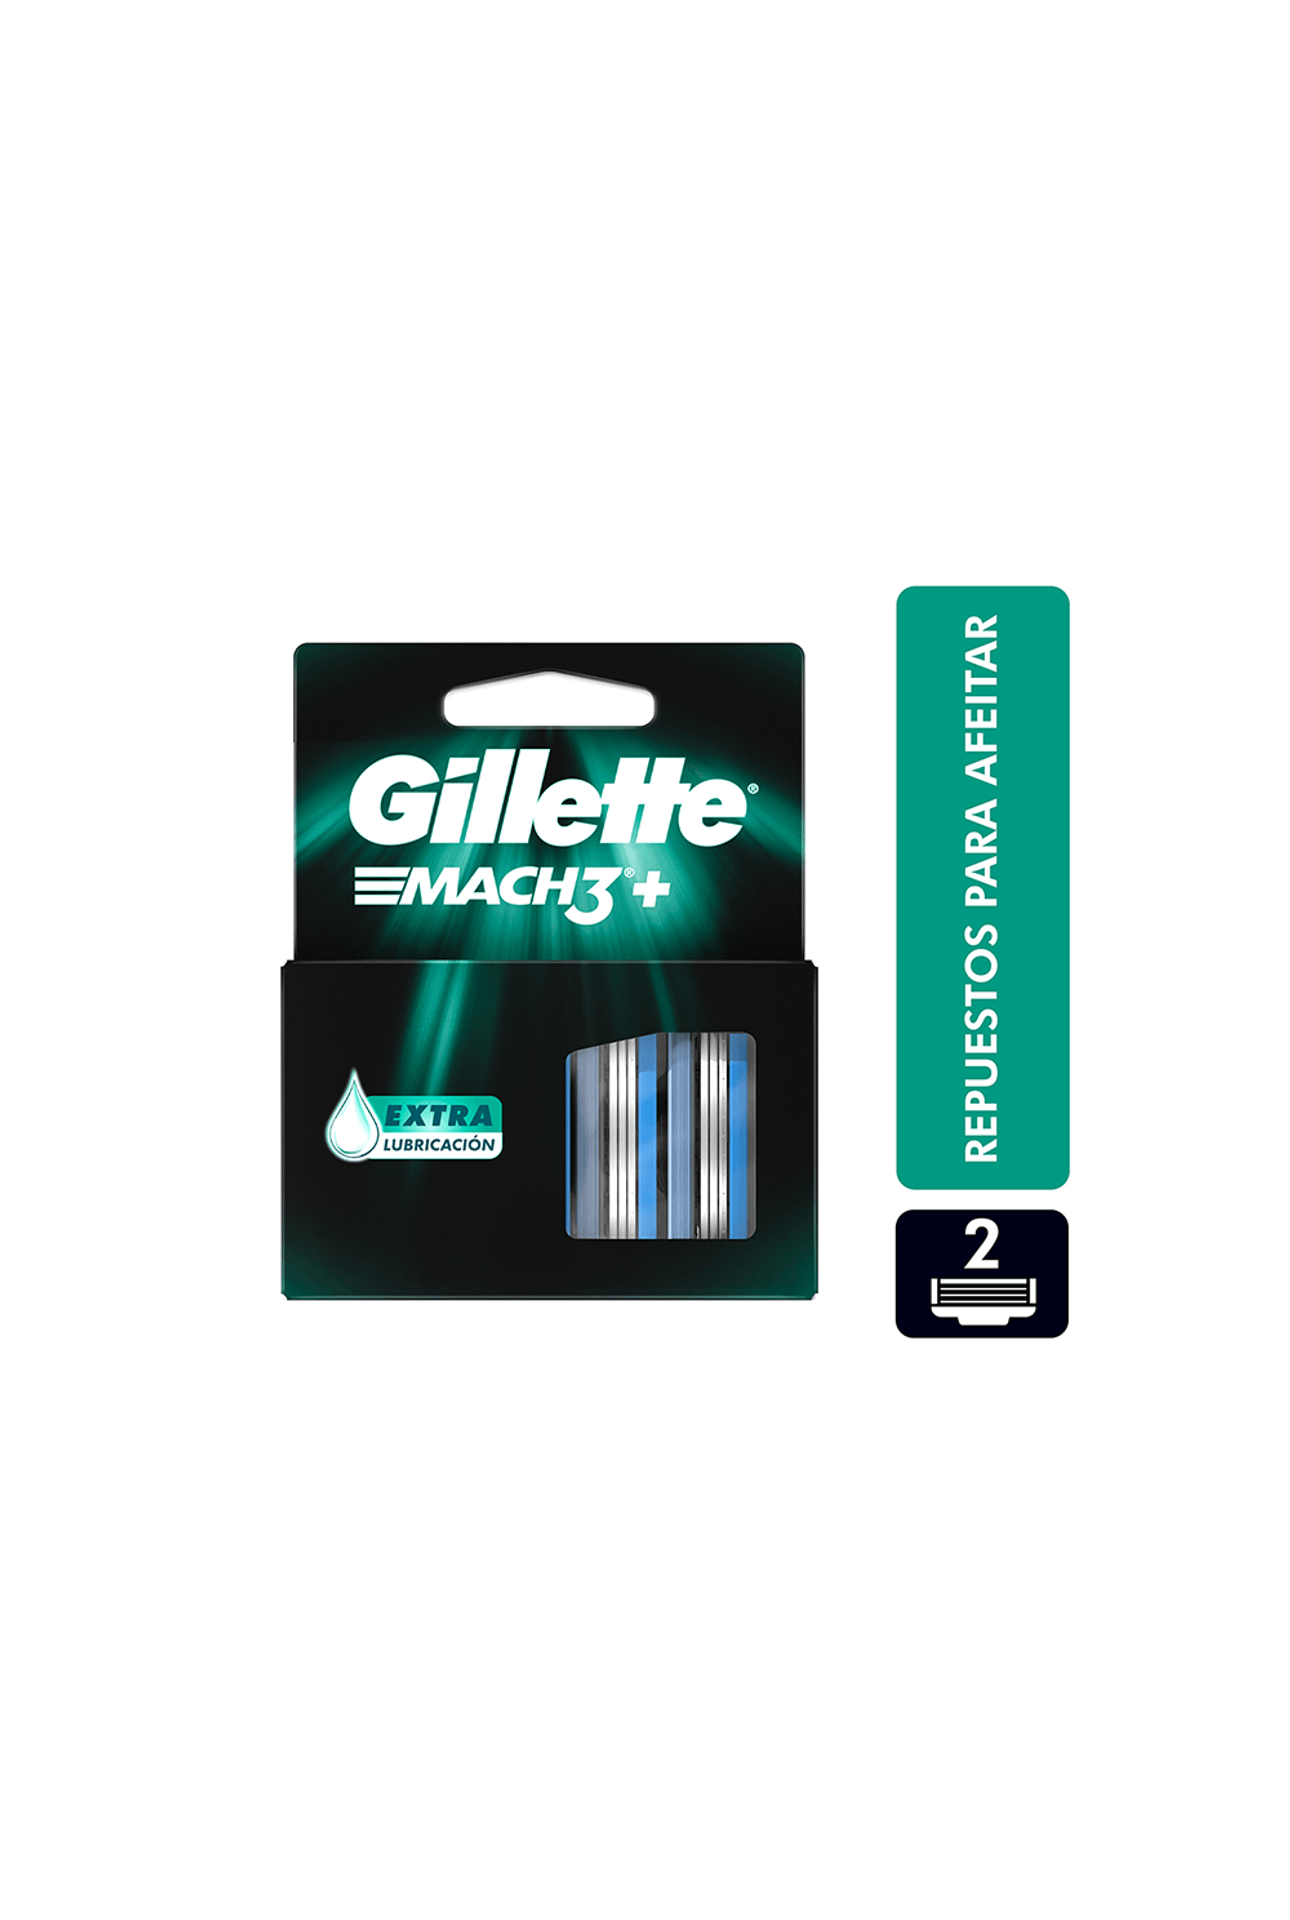 Gillette-Mach3-Repuesto-Para-Afeitar-Gillette-x-2-uni-7500435198097_img1